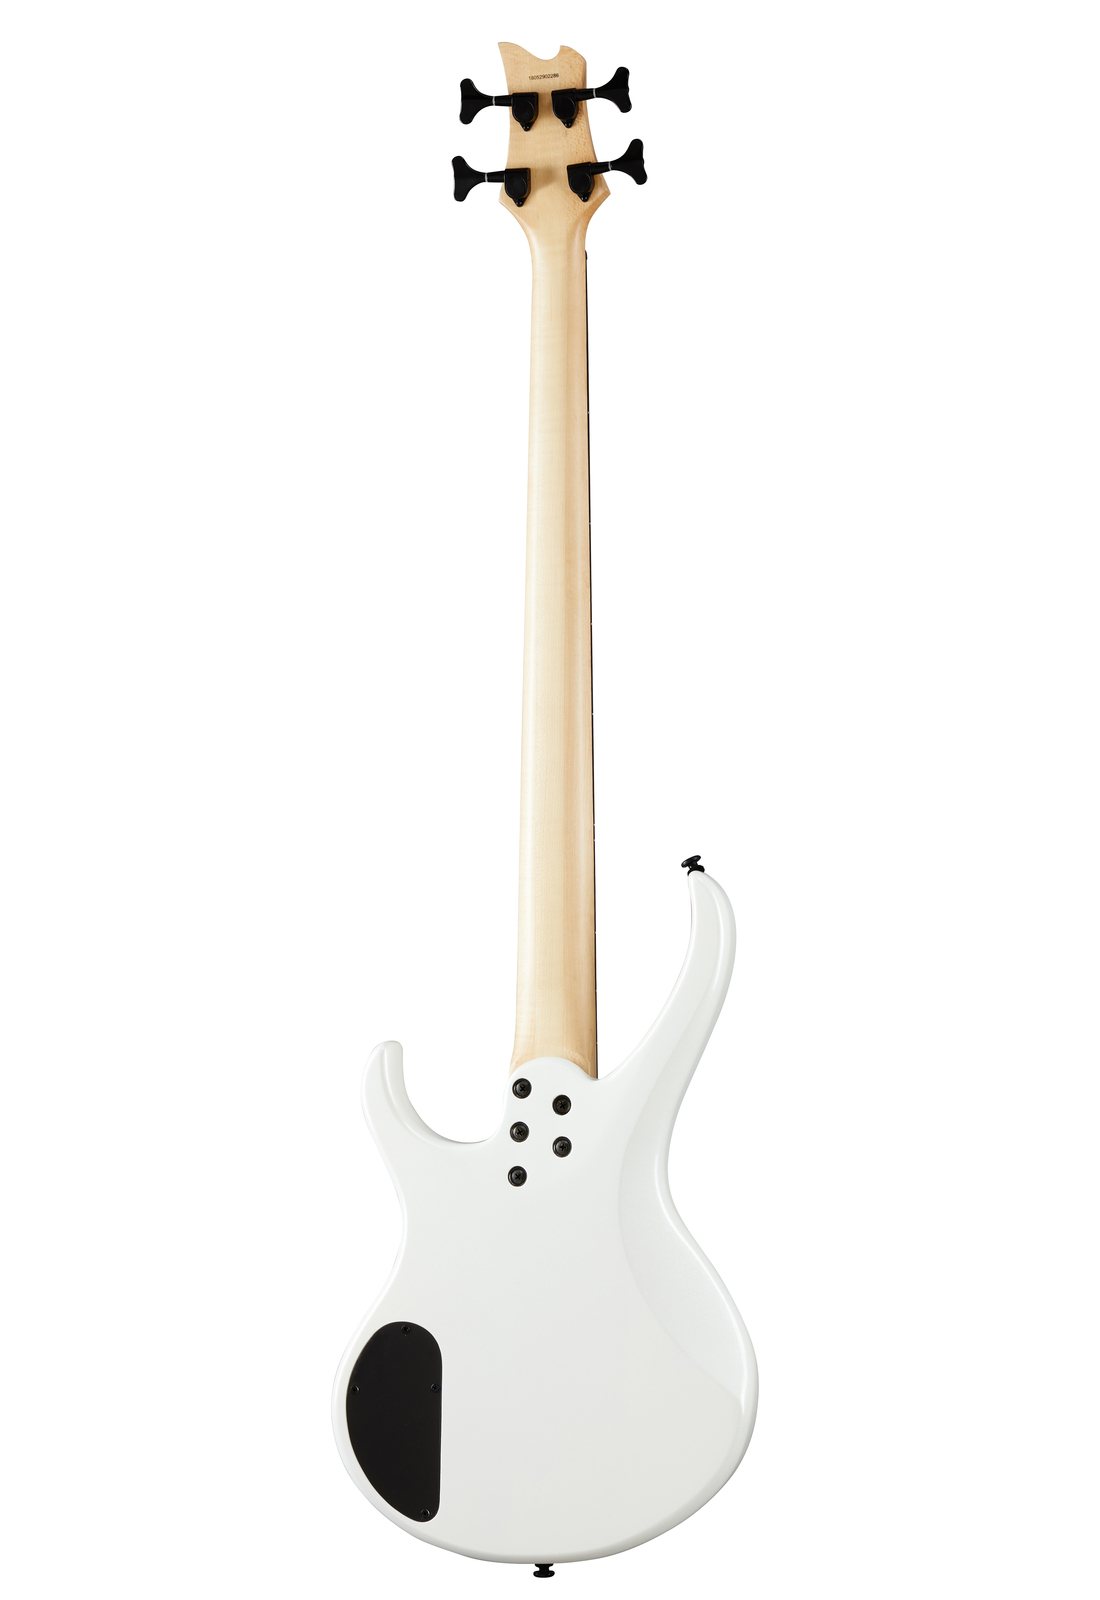 Kramer D-1 Bass Pearl White